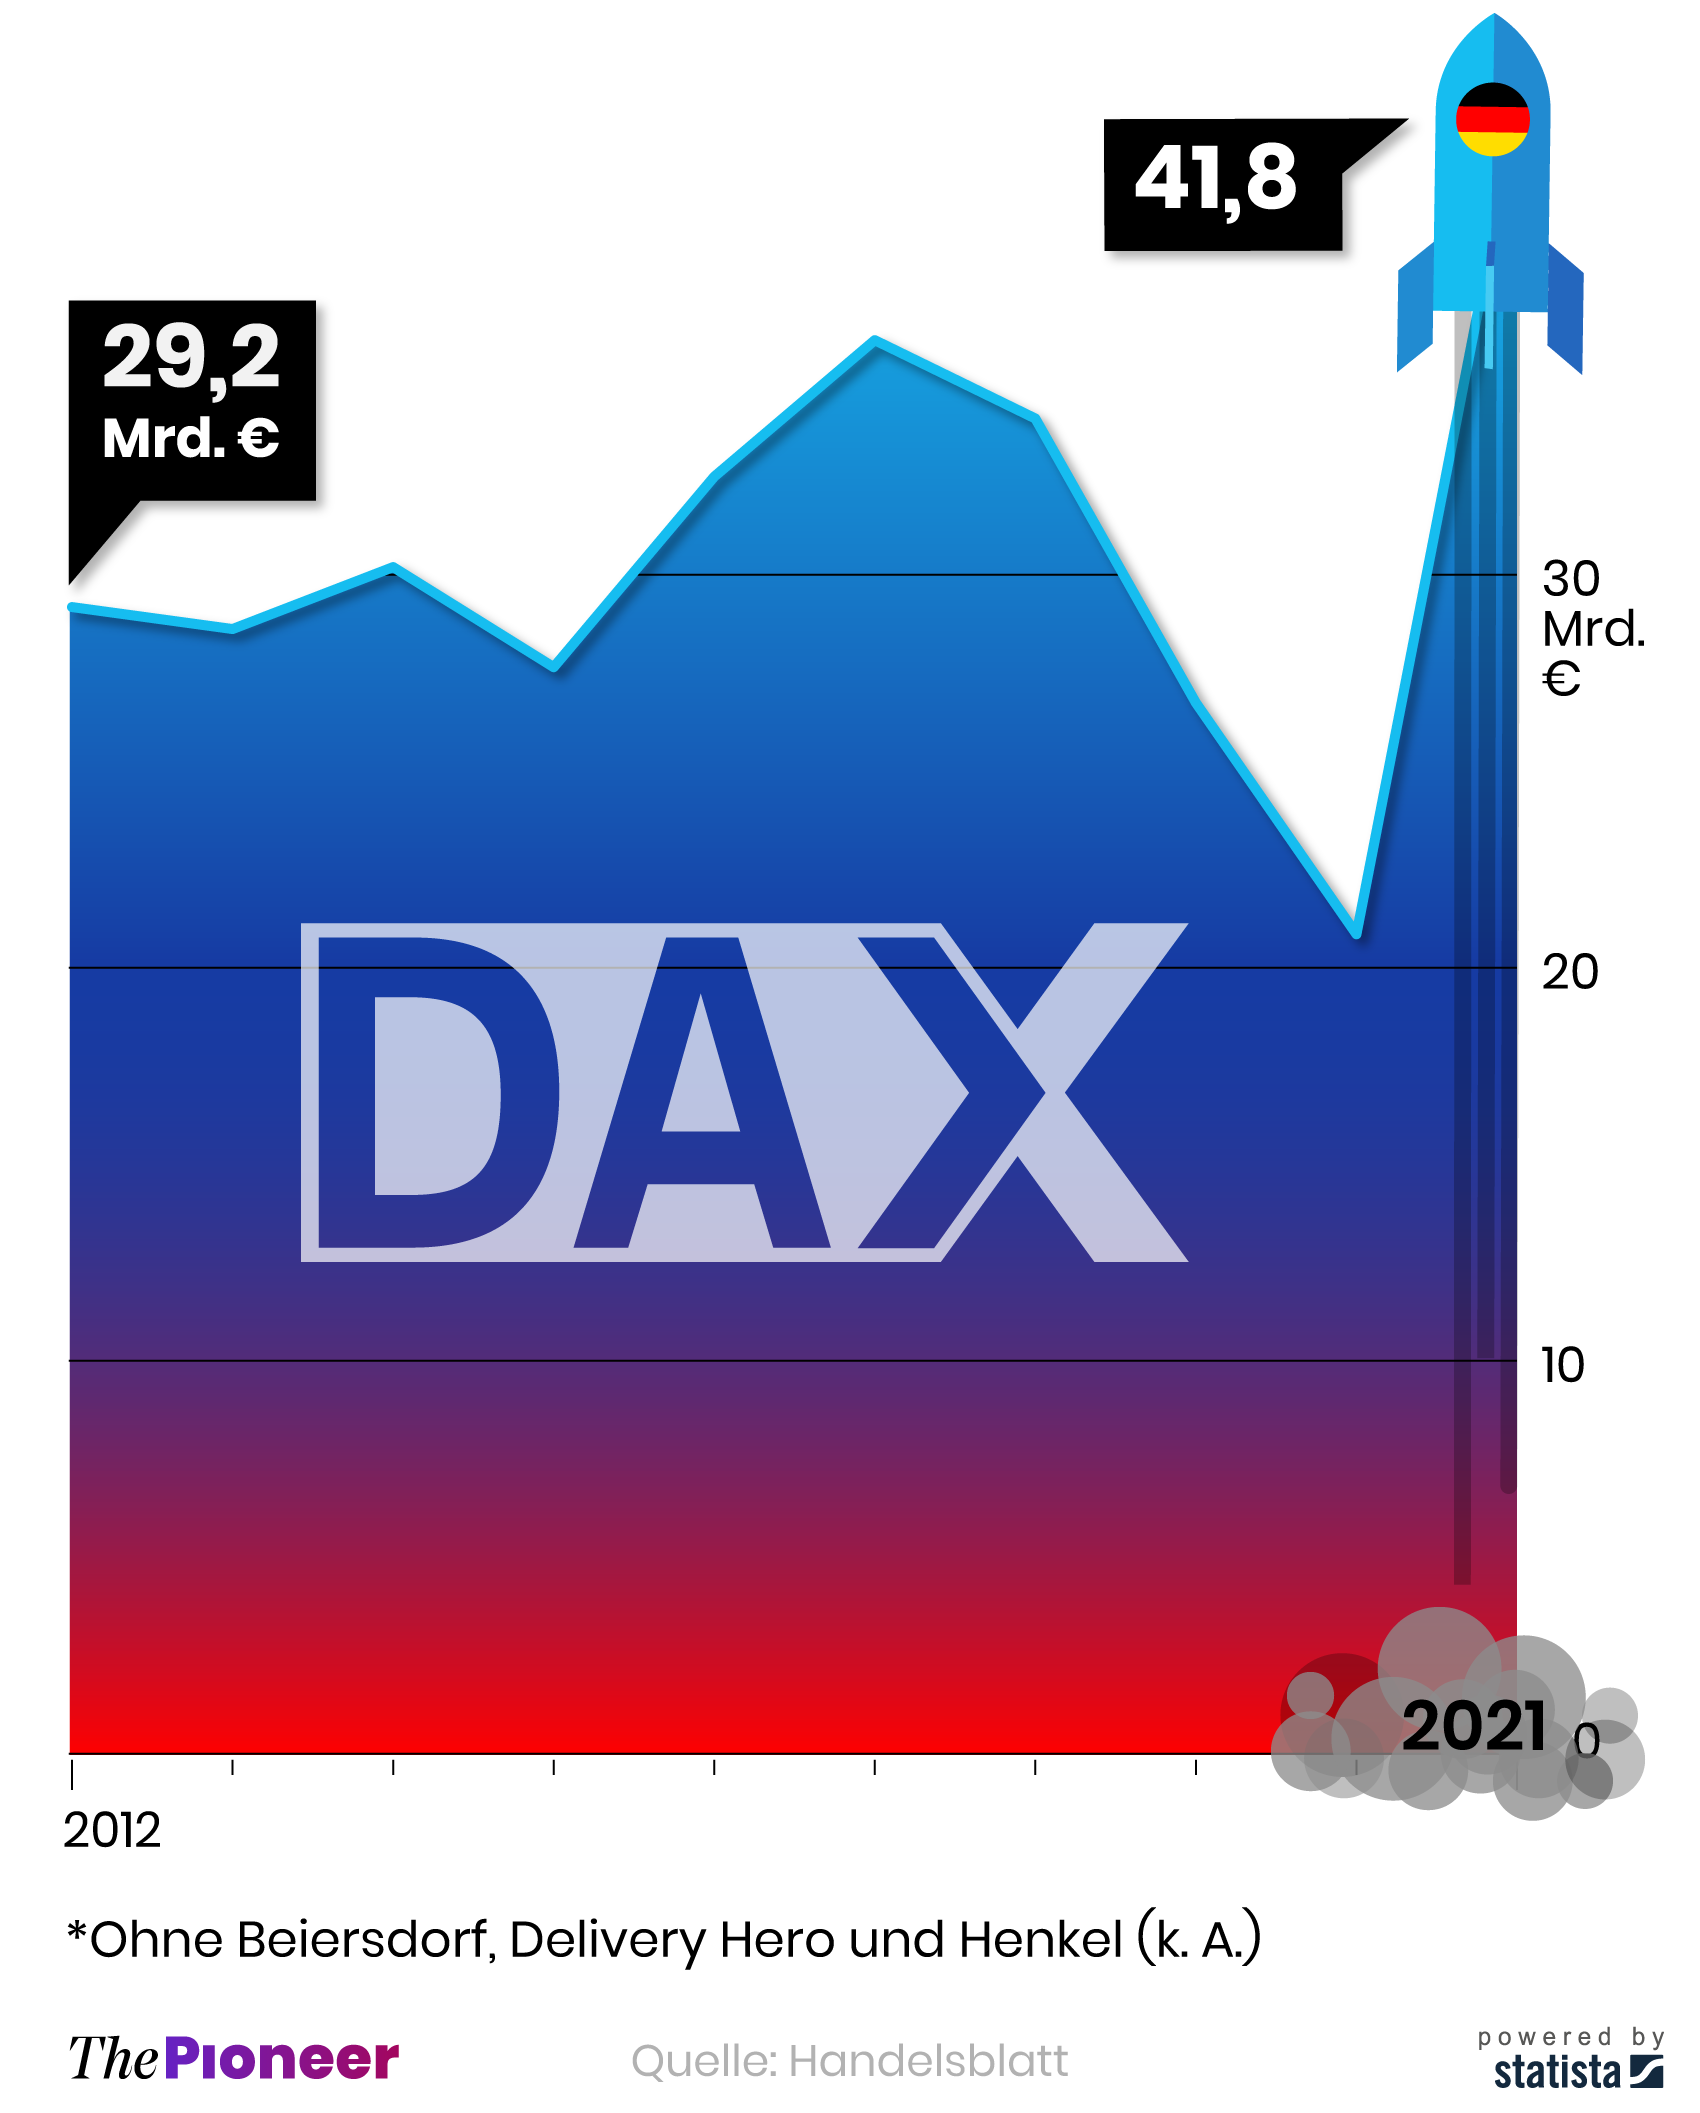 Gewinn vor Steuern und Zinsen (Ebit) der Dax-Unternehmen, jeweils Januar bis März, in Mrd. Euro*